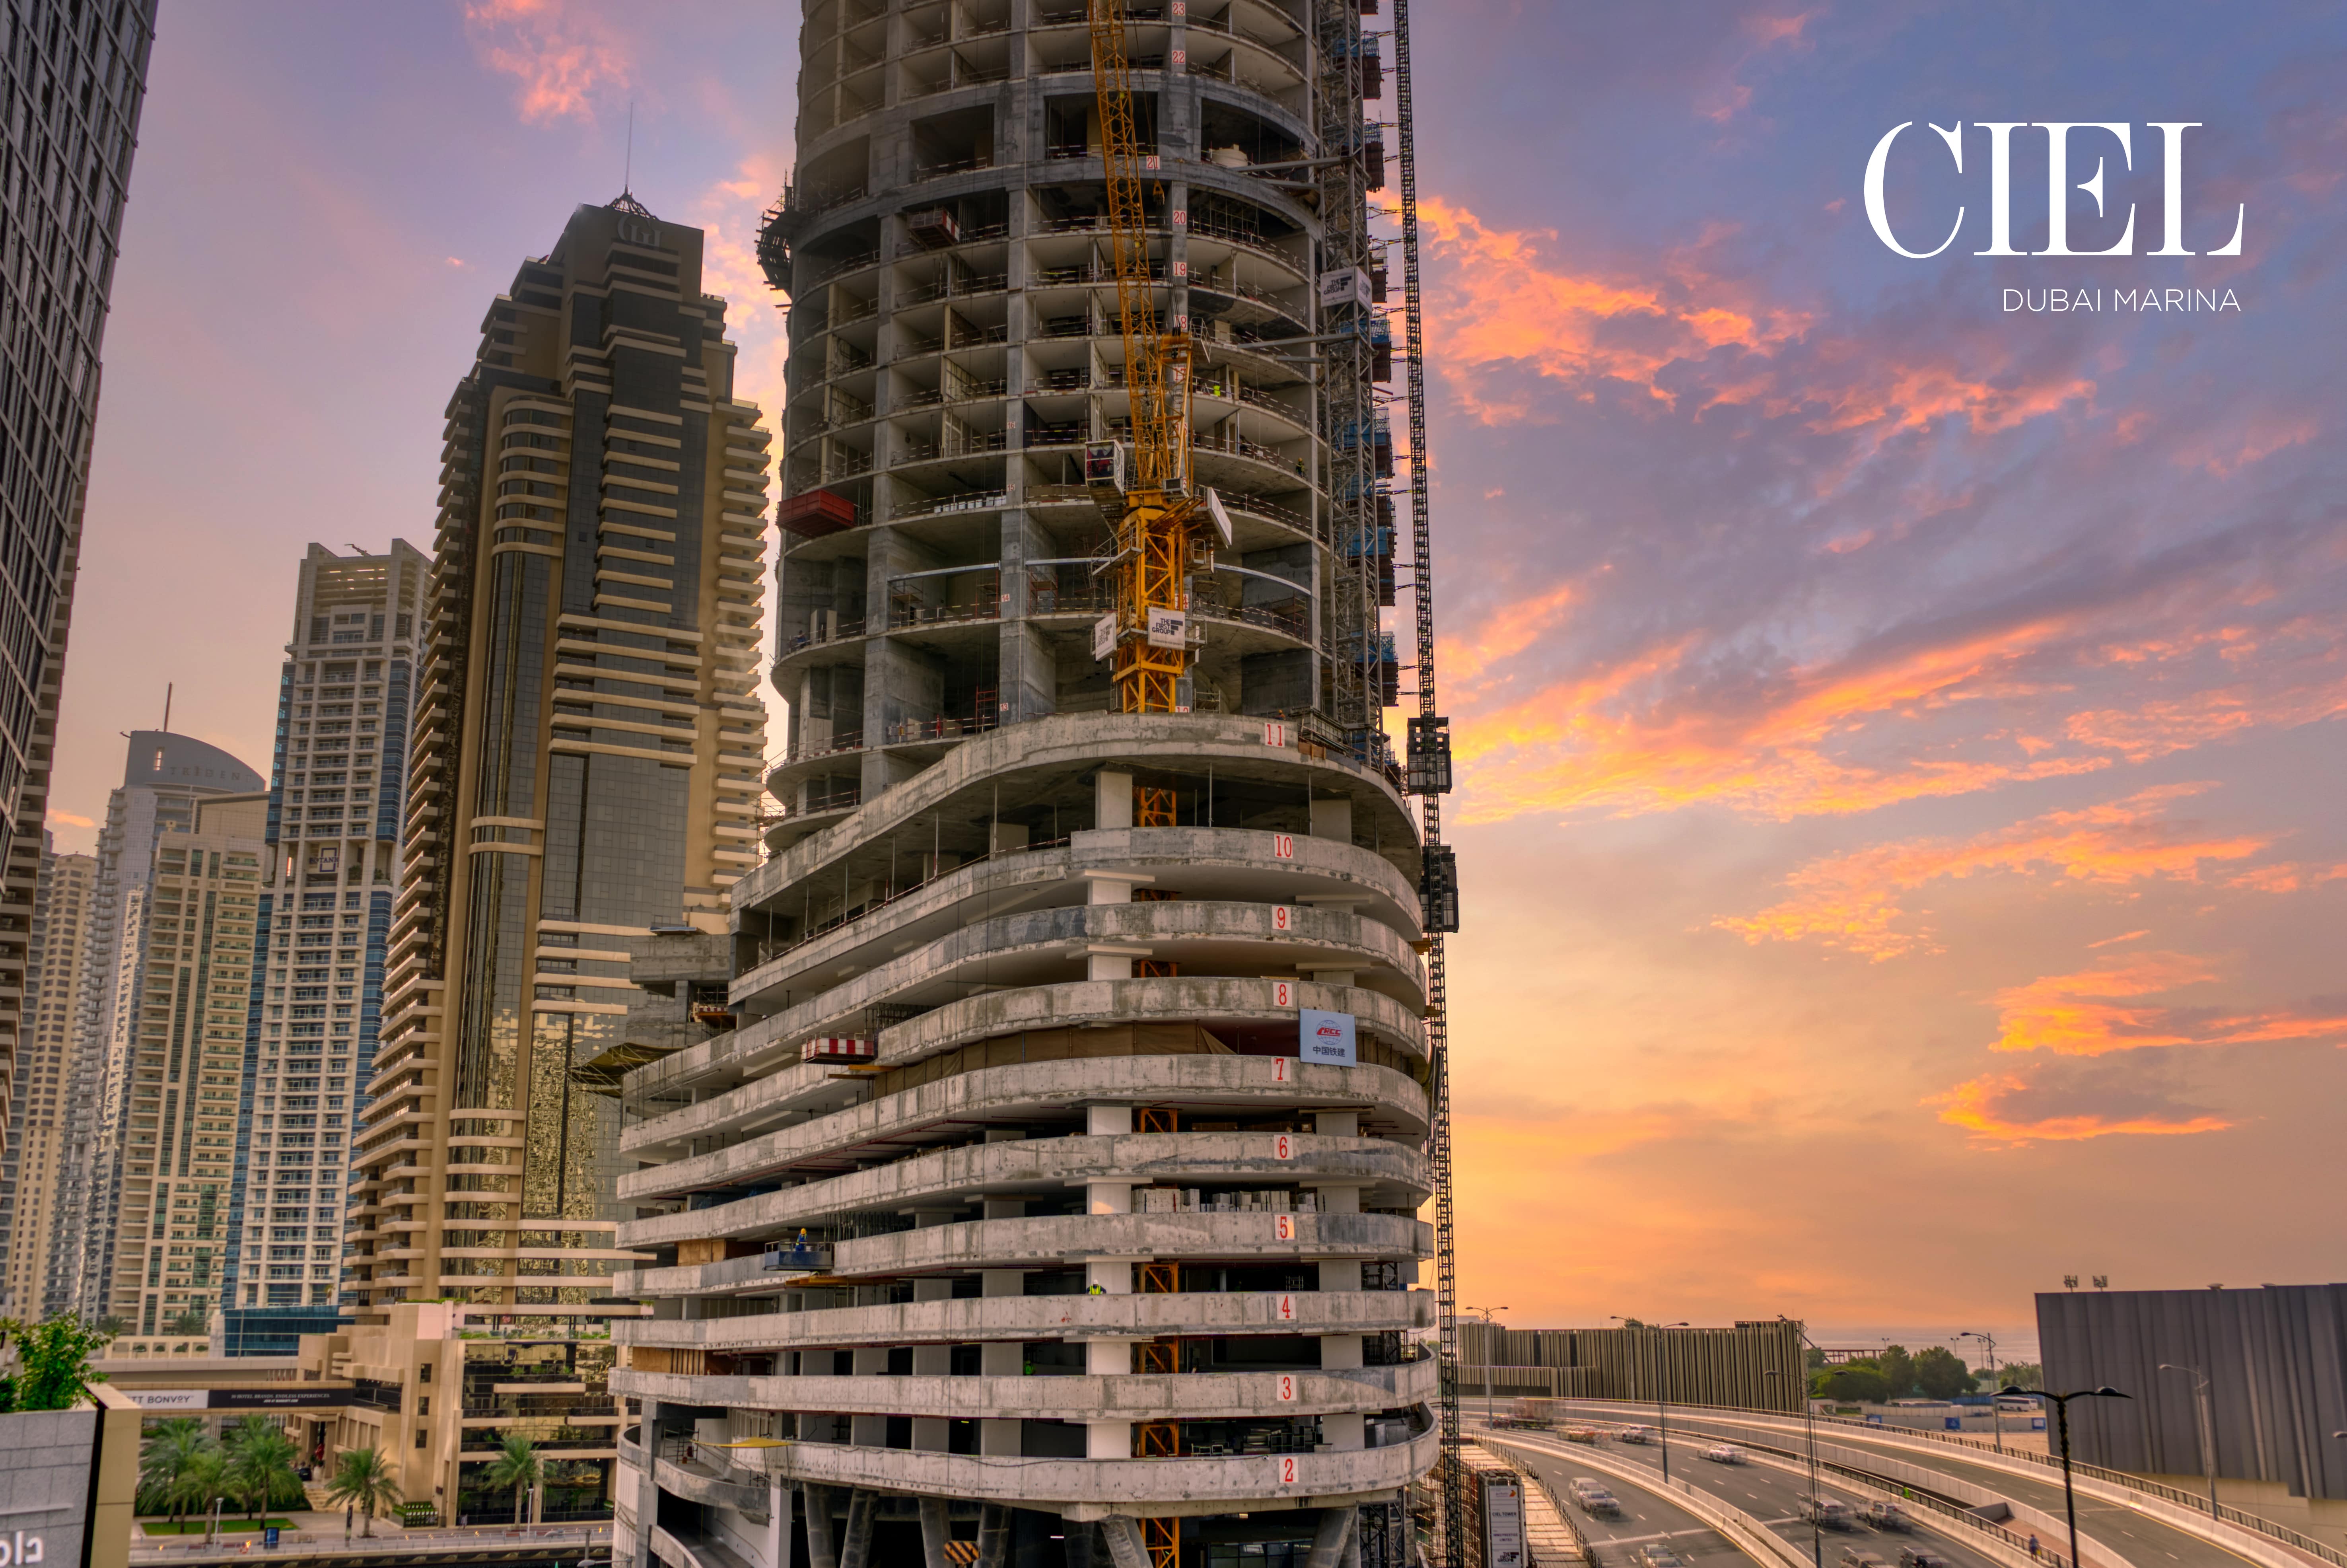 أطول فندق على مستوى العالم، برج سيل، يتجاوز جدول البناء المقرر